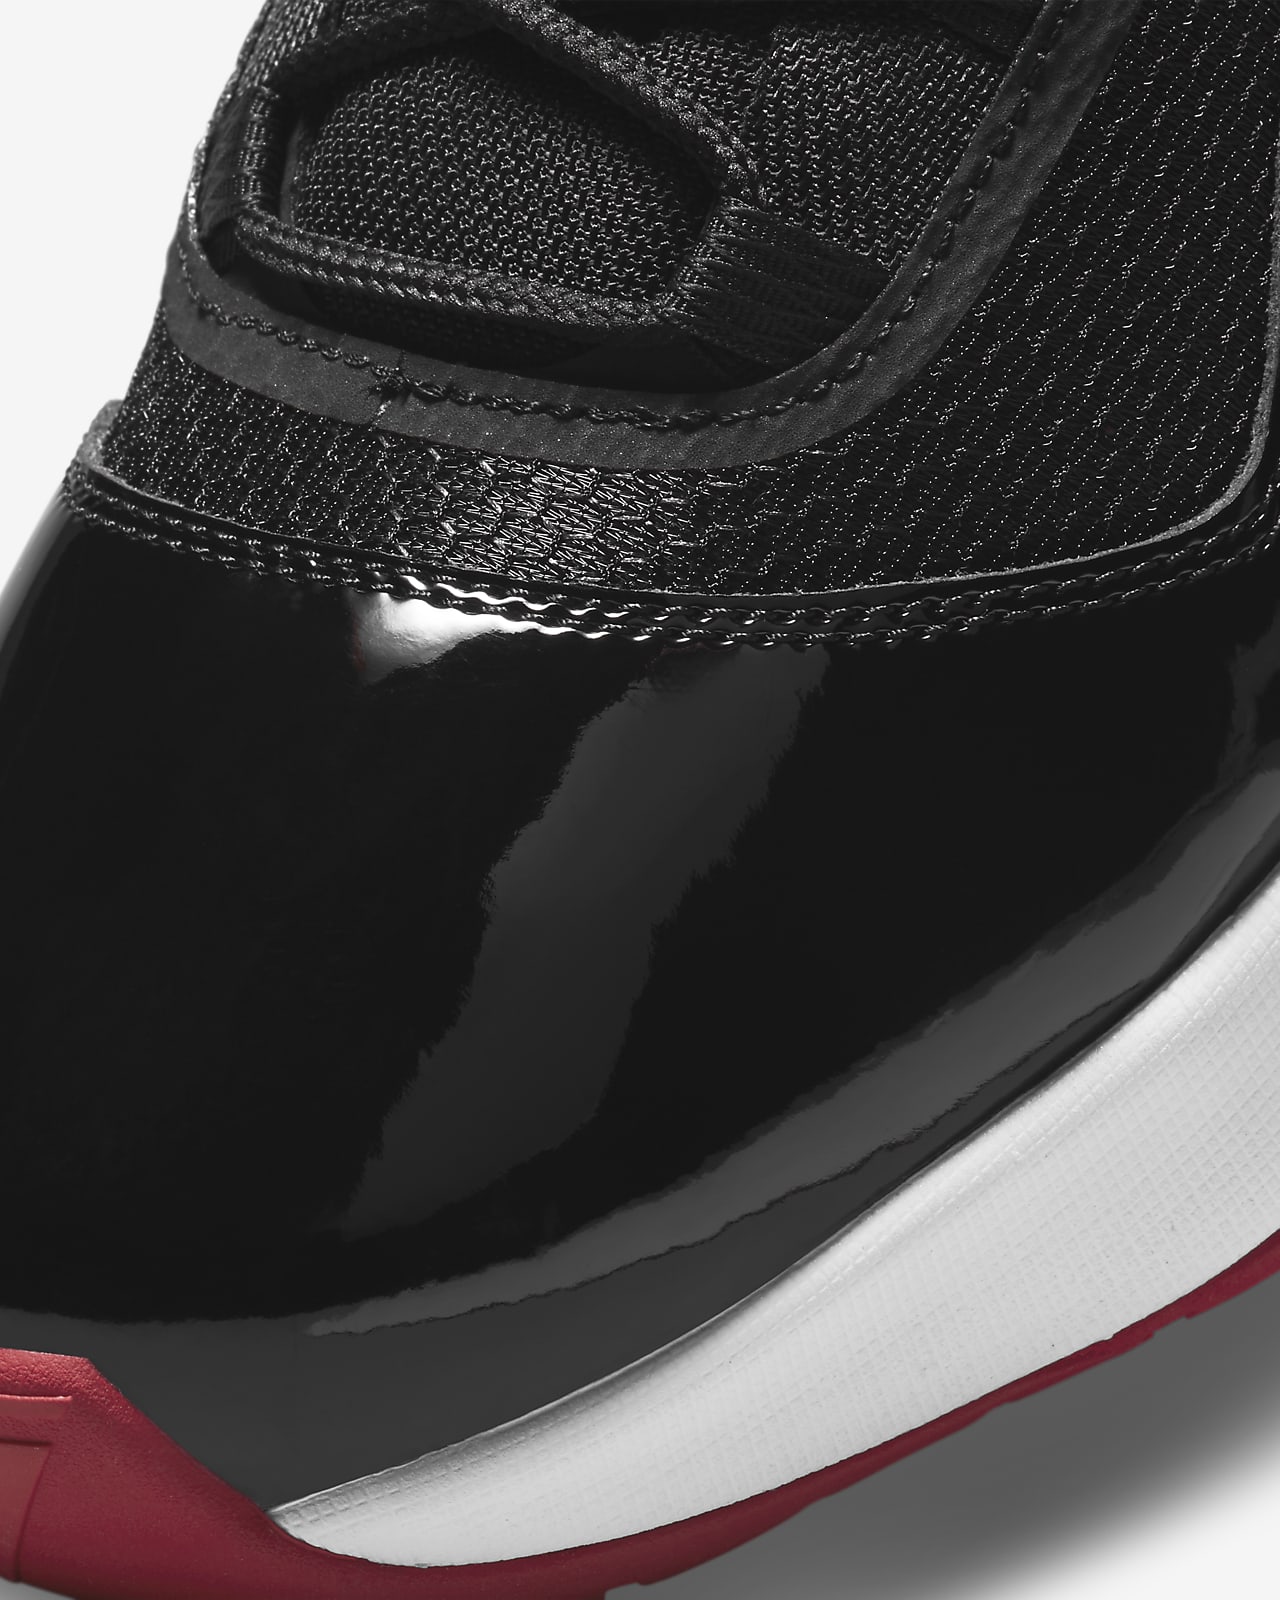 Air Jordan 11 CMFT Low Men's Shoes. Nike HR